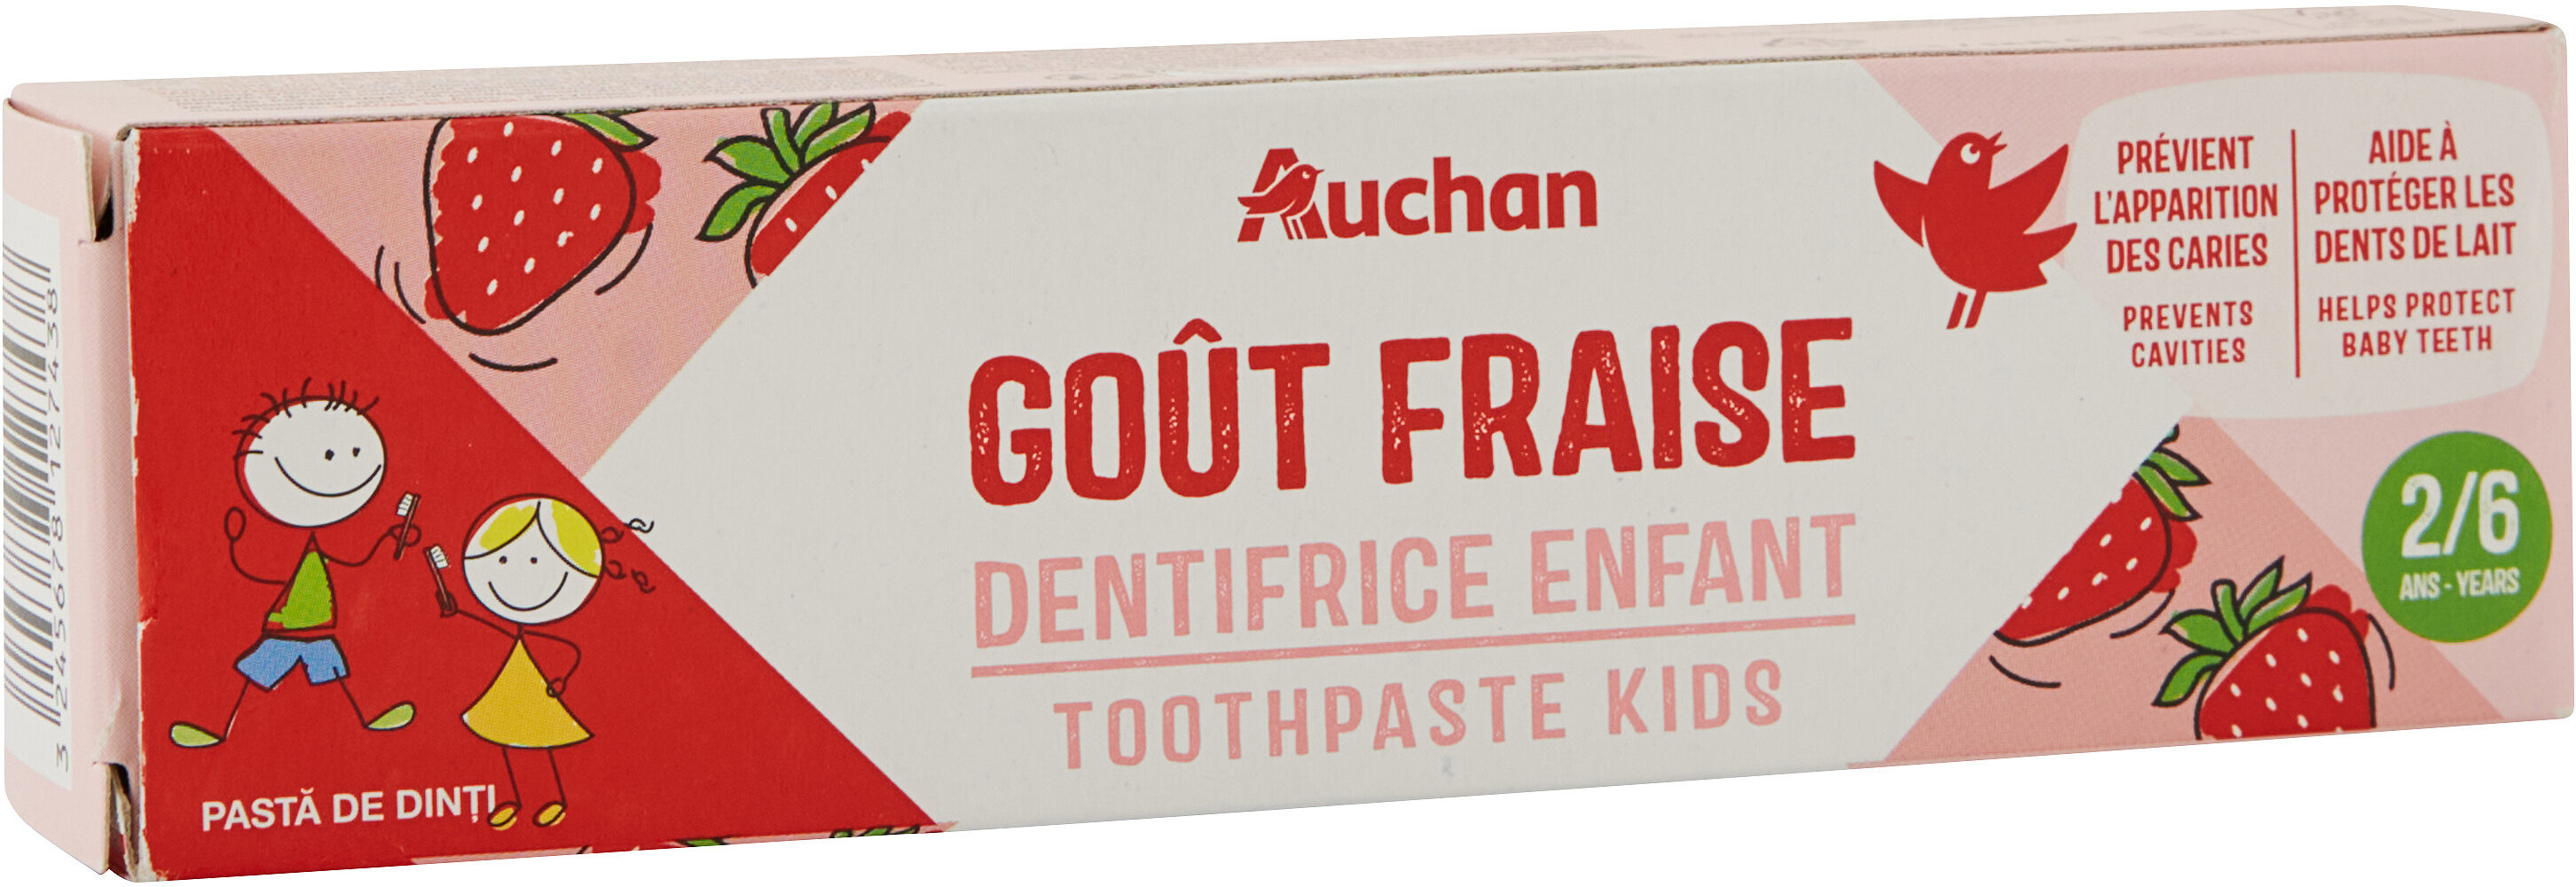 Auchan kids dentifrice fraise tube 2 + - 50ml - Produit - fr